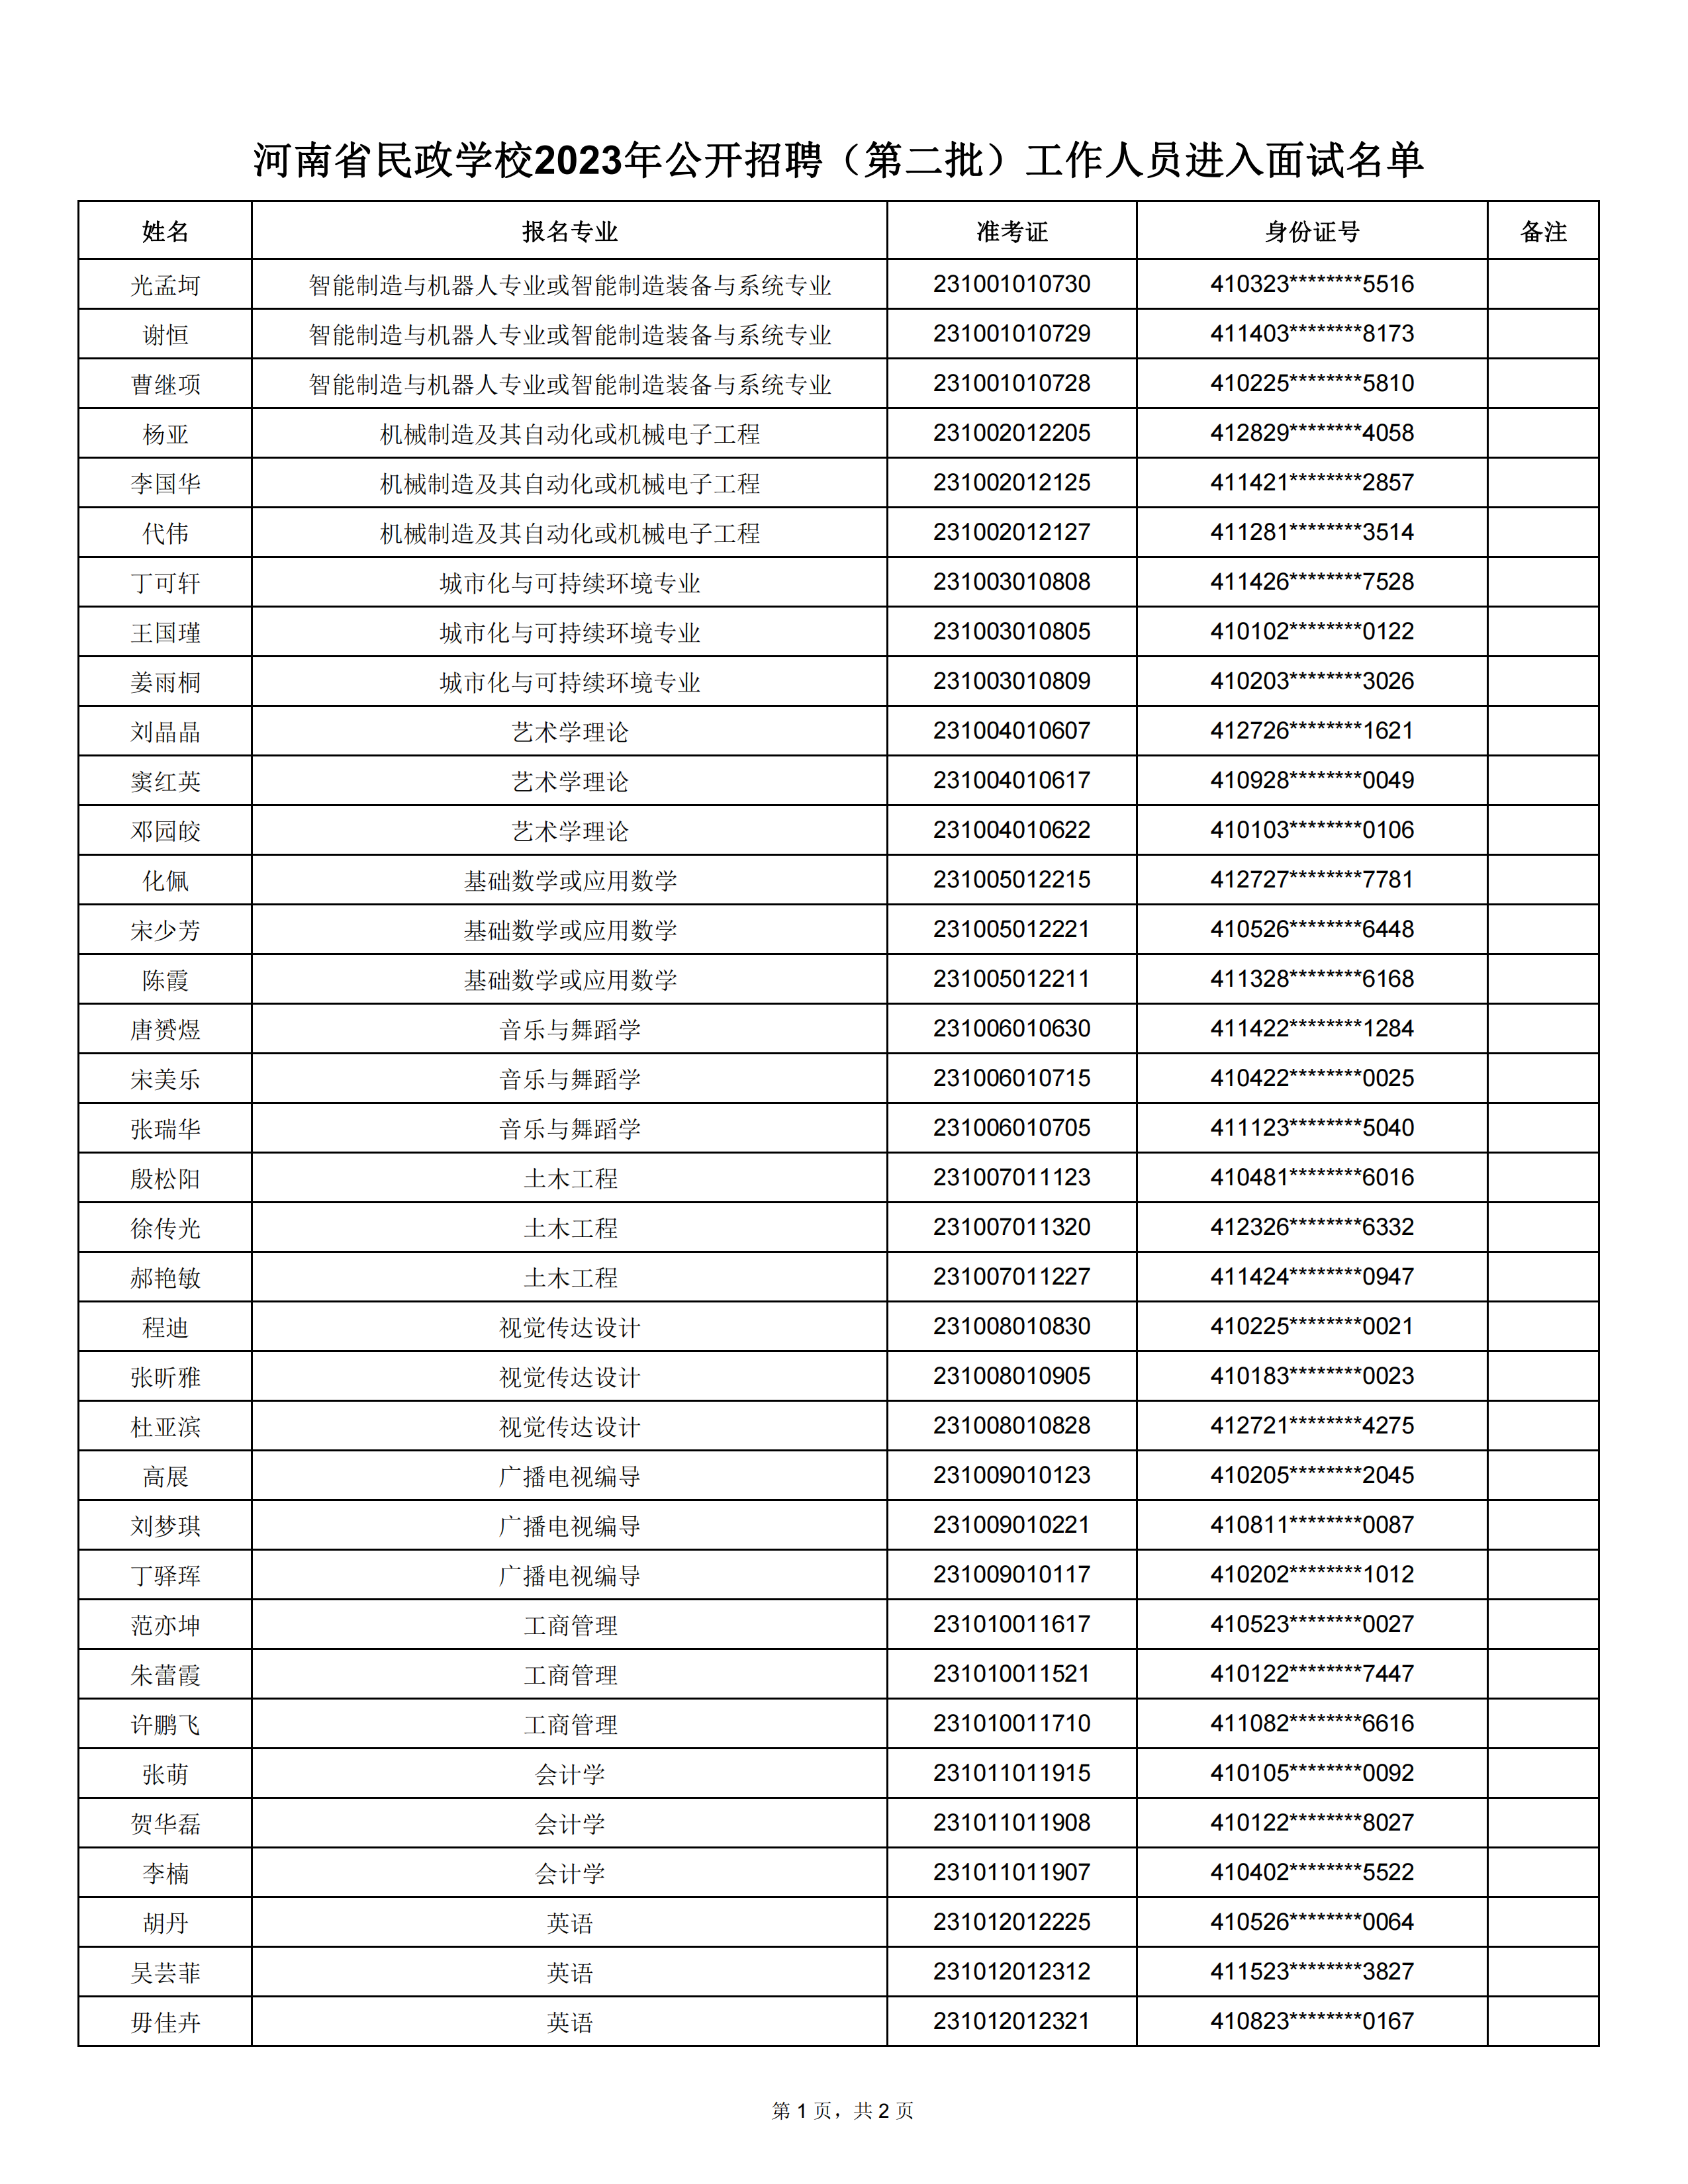 河南省民政学校2023年公开招聘（第二批）工作人员进入面试名单(2)_00.png